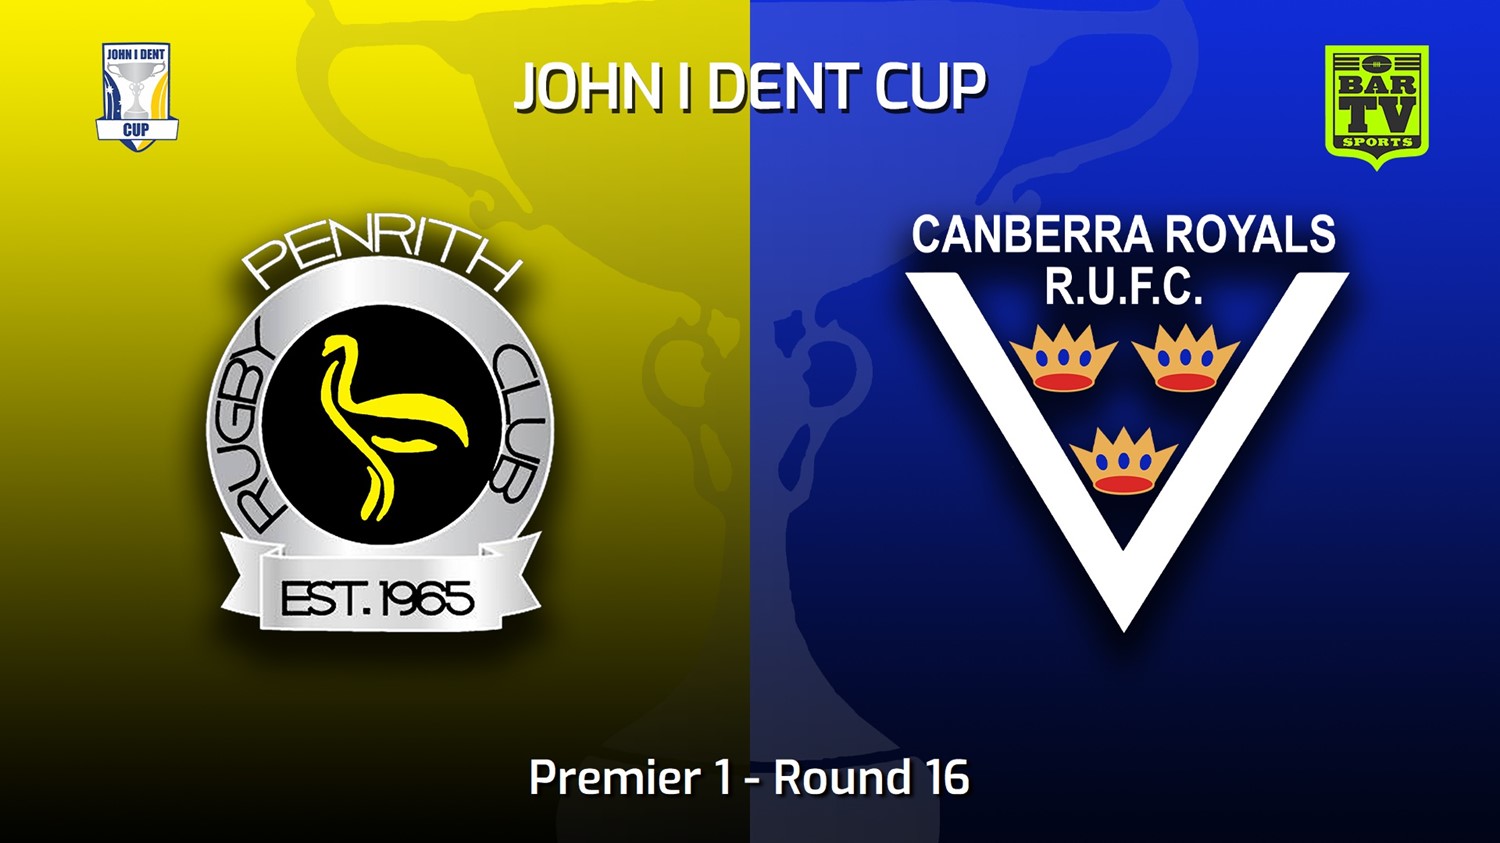 220813-John I Dent (ACT) Round 16 - Premier 1 - Penrith Emus v Canberra Royals Slate Image